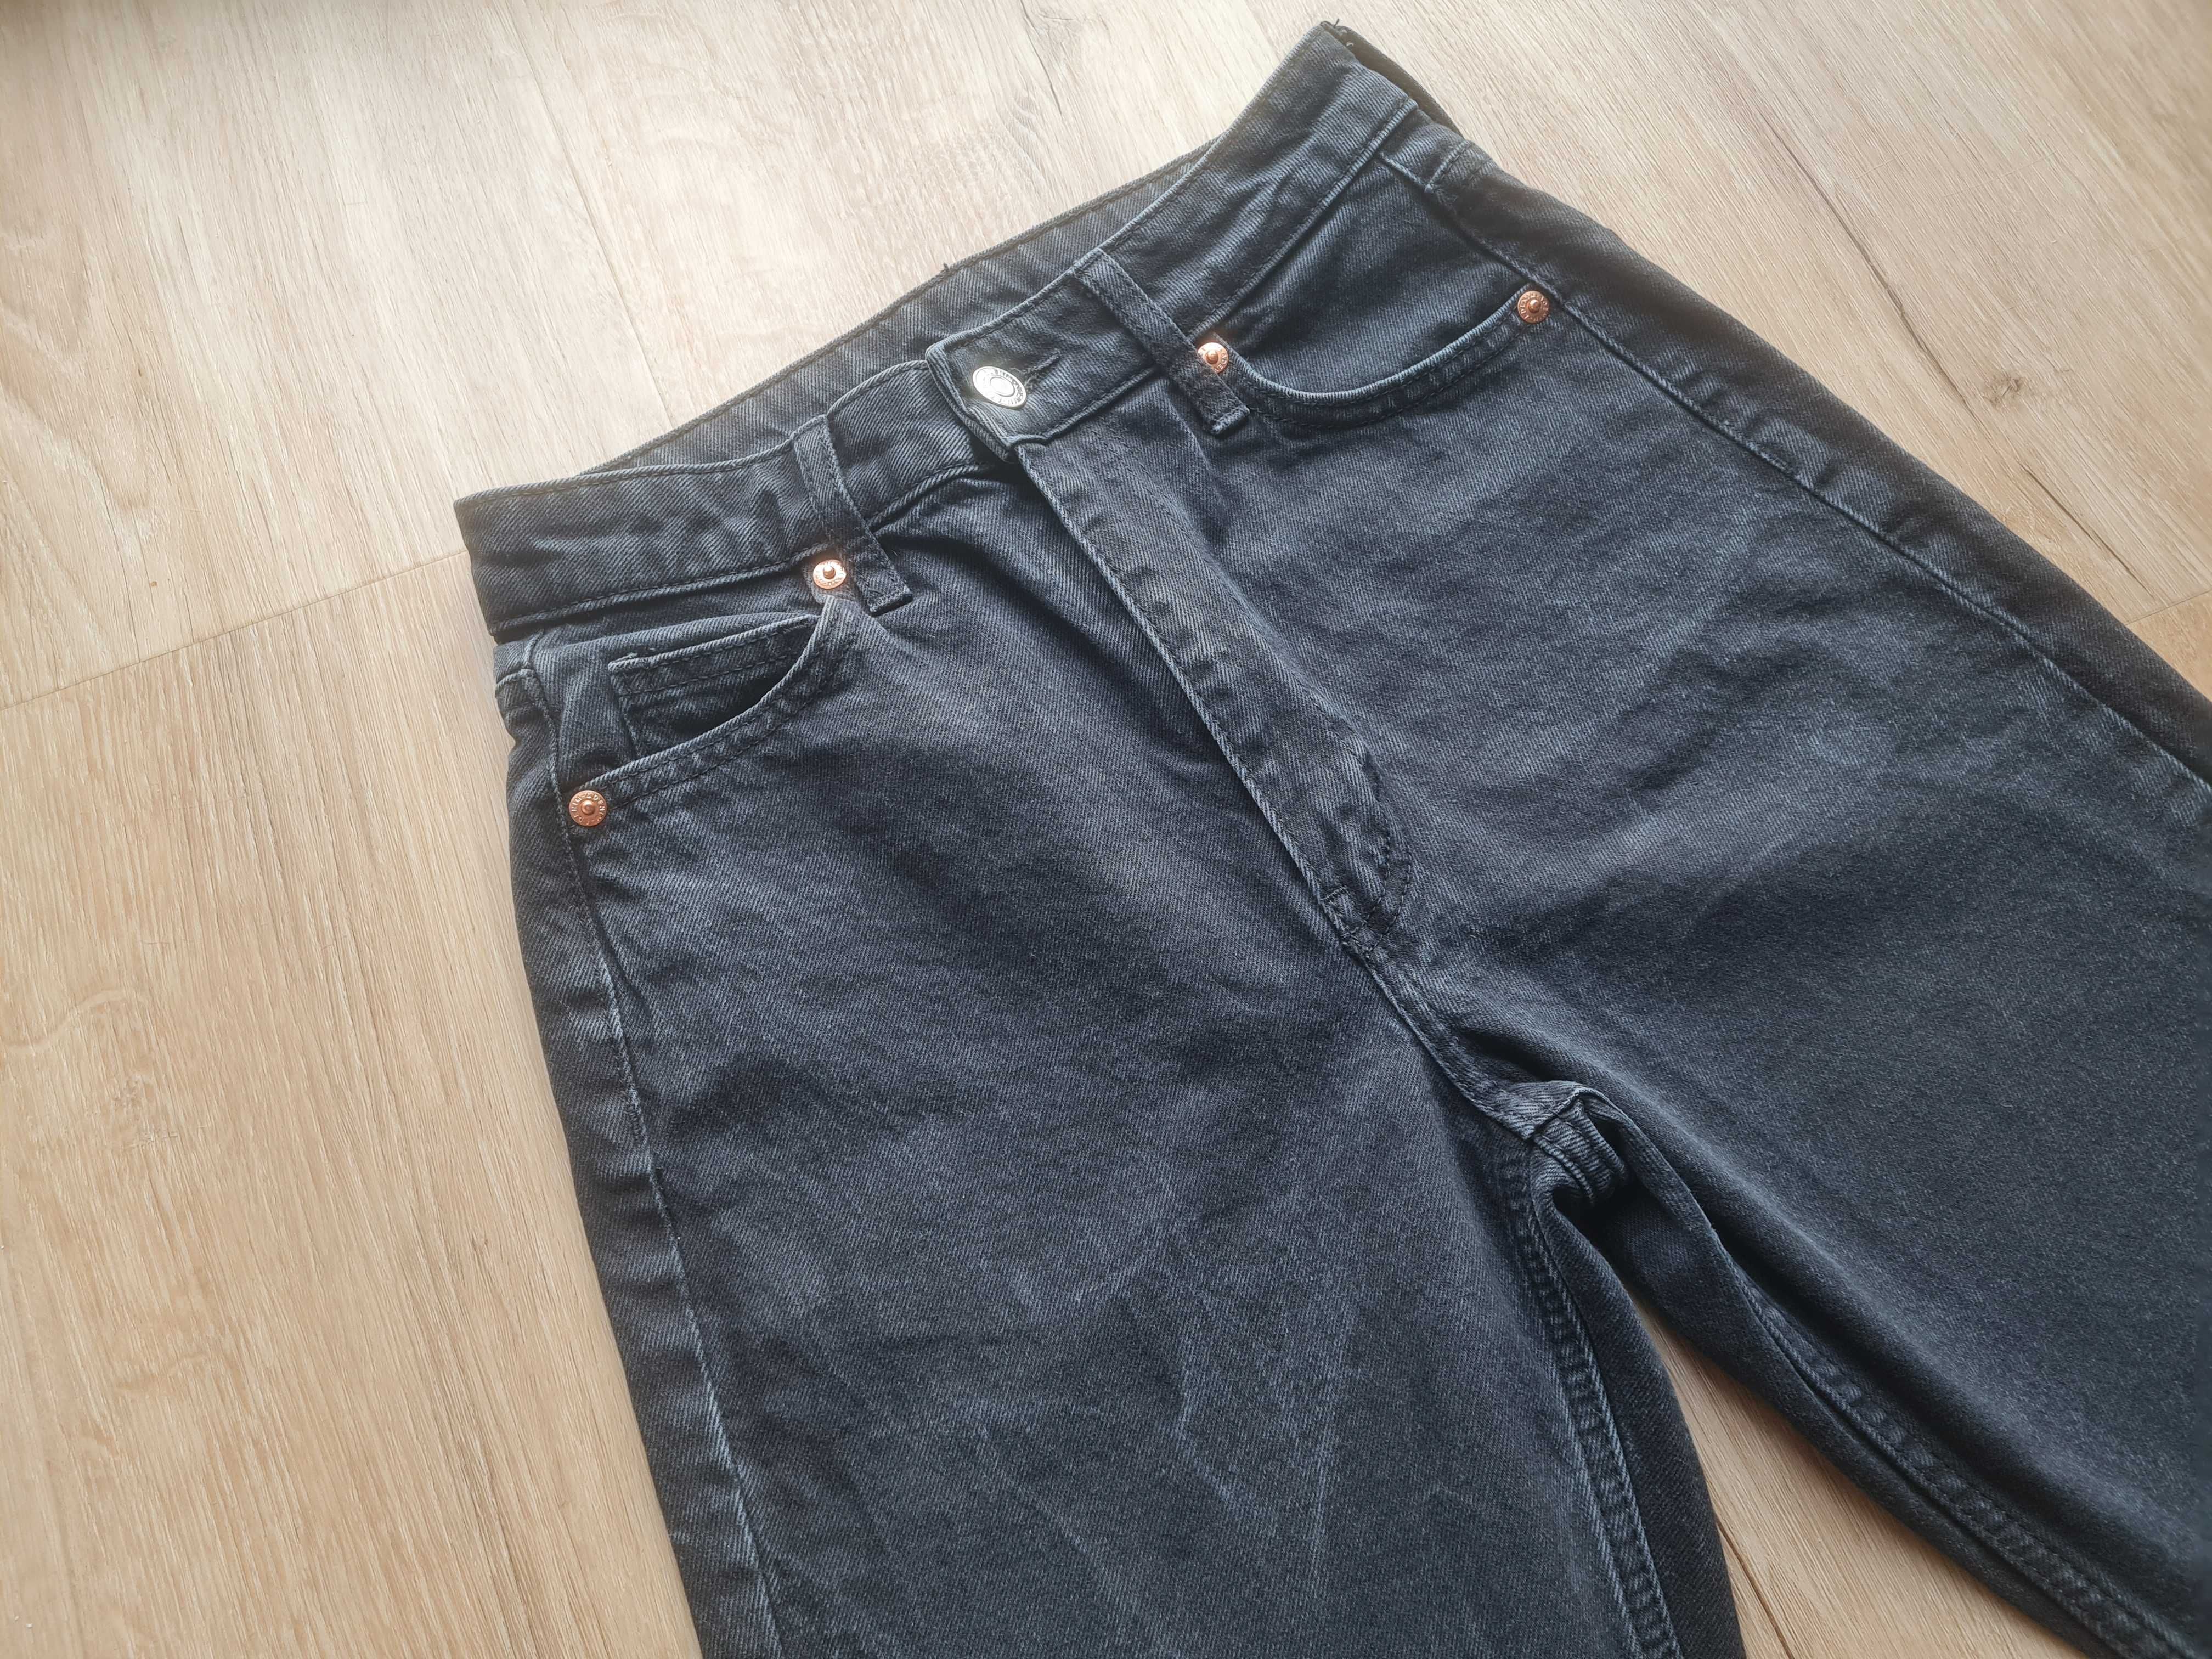 Spodnie jeansowe czarne High Waist Vintage Straight prosta nogawka